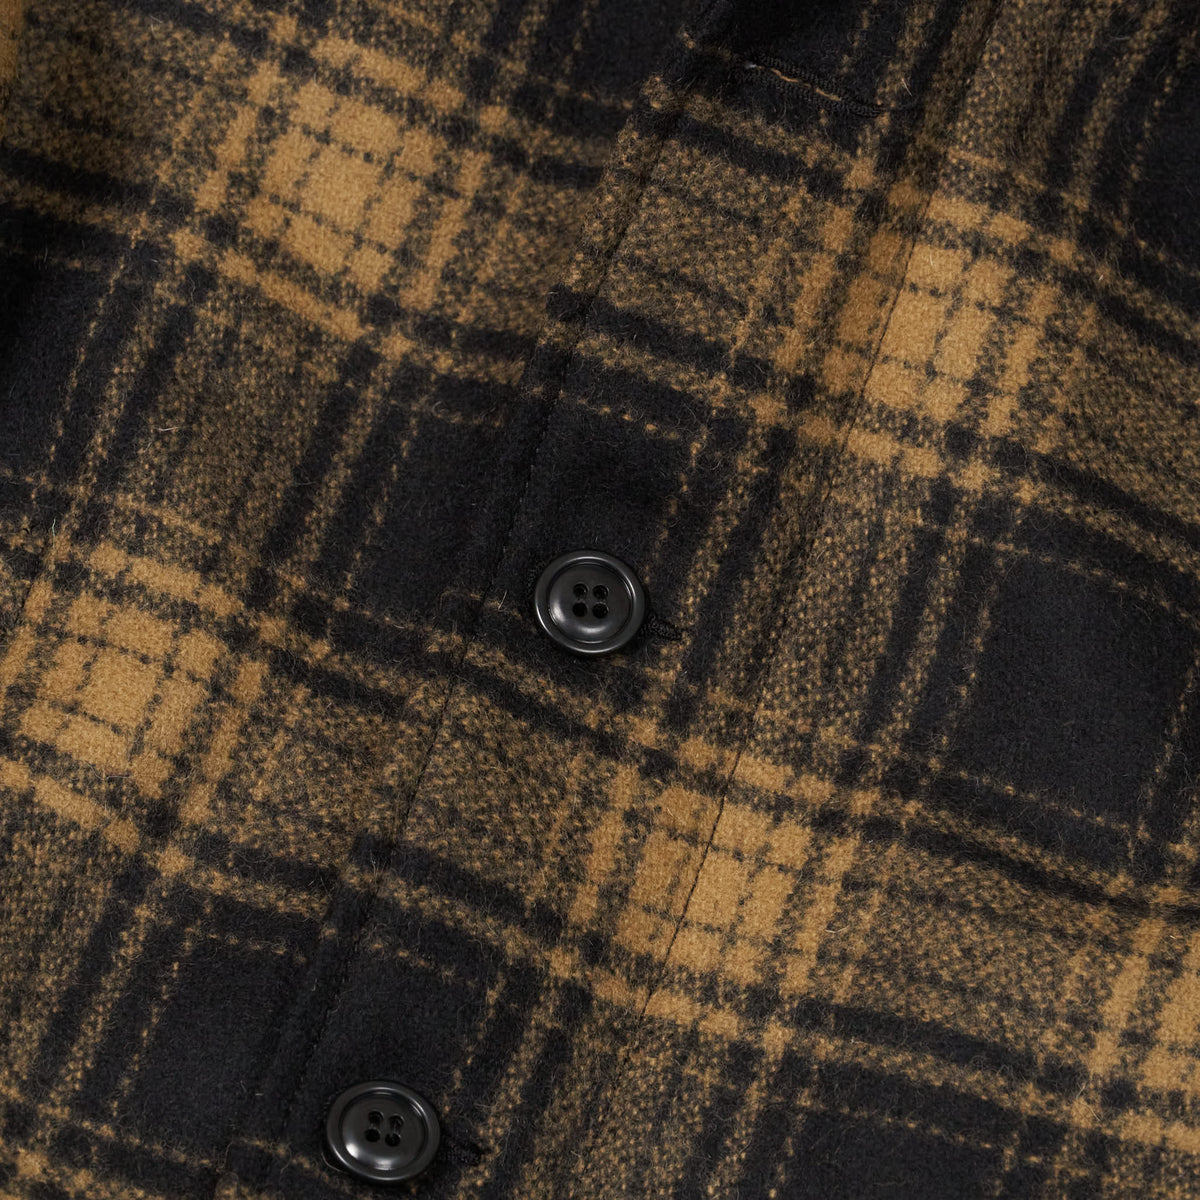 Manifattura Ceccarelli Wool Plaid N-1 Deck Jacket